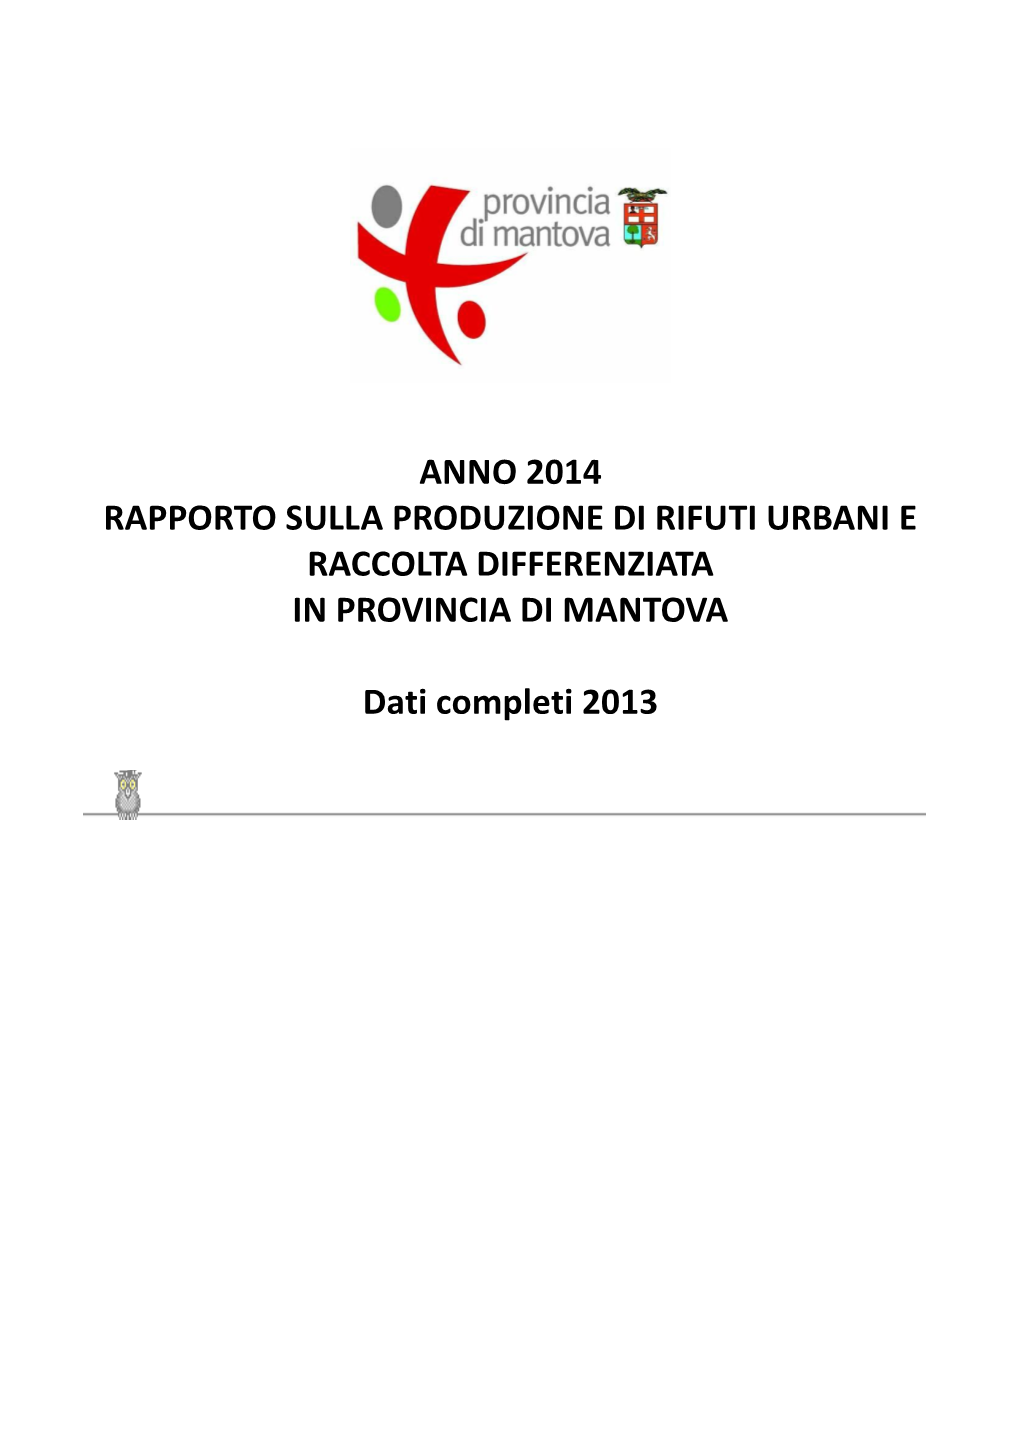 Anno 2014 Rapporto Sulla Produzione Di Rifuti Urbani E Raccolta Differenziata in Provincia Di Mantova